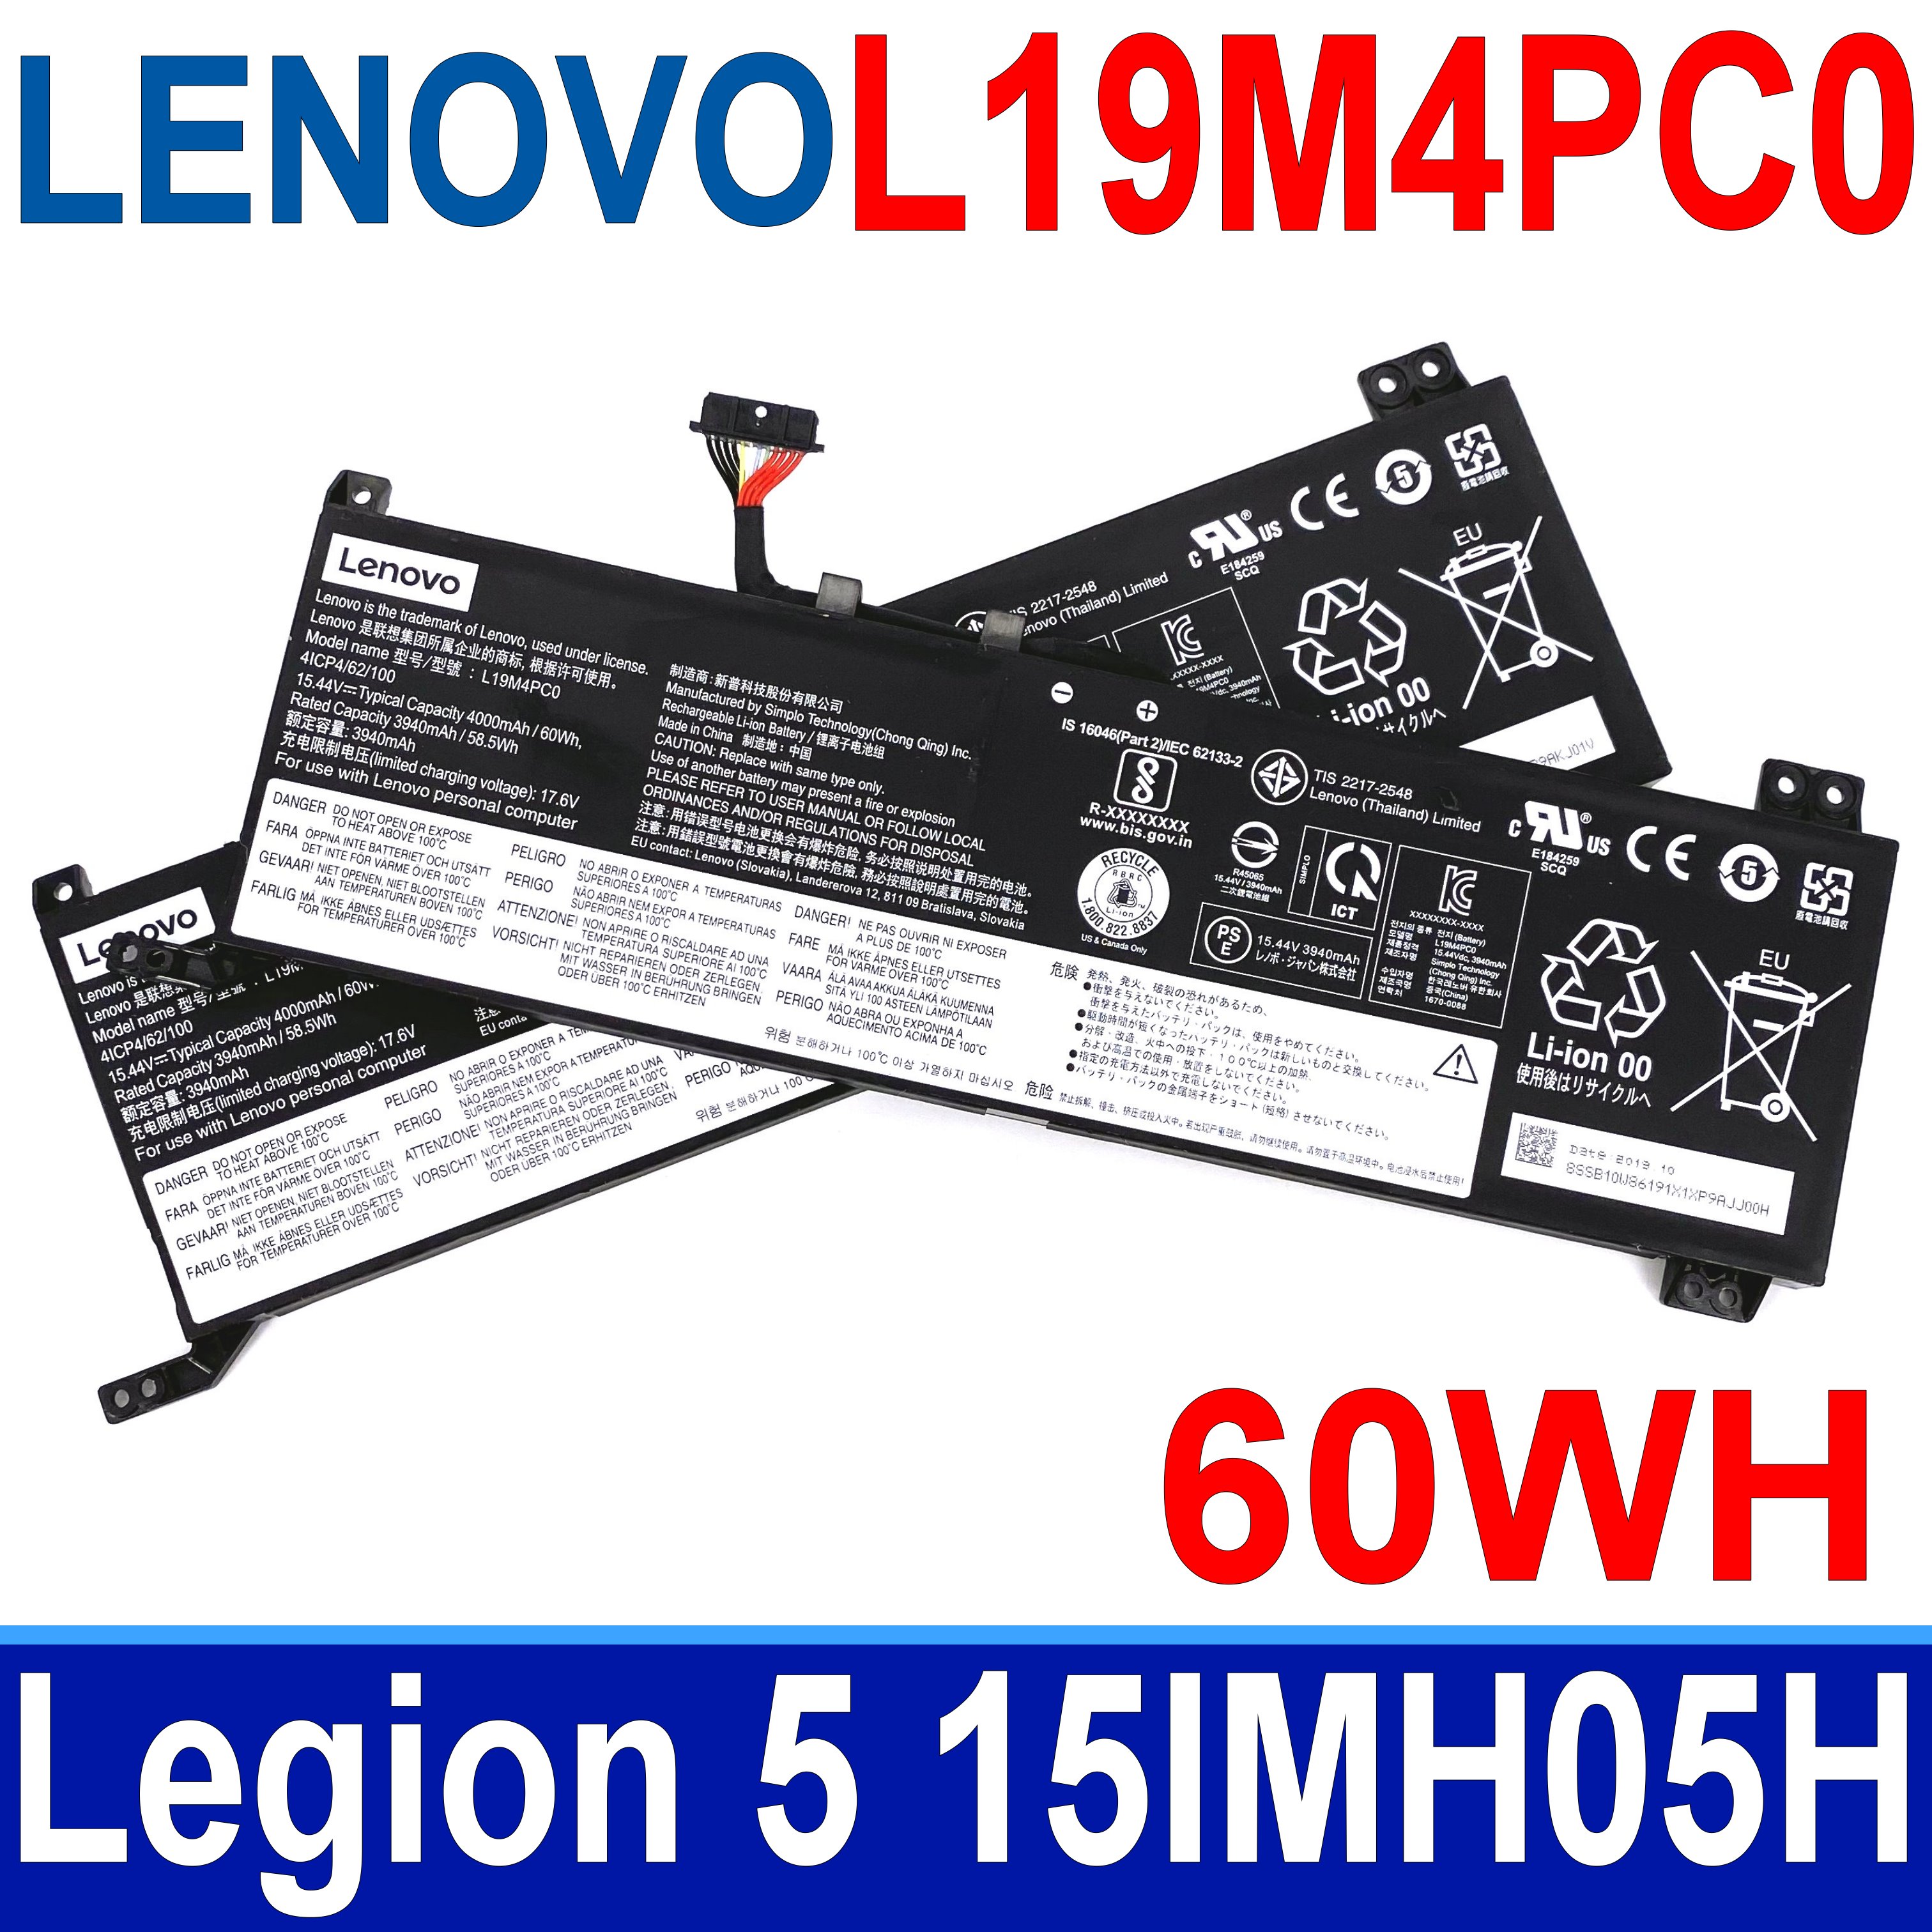 LENOVO L19M4PC0 4芯 原廠電池 4ICP4/62/100 5B10W86195 SB10W86190 SB10W86191 L19C4PC0 L19L4PC0 L19SPC0 Legion 5 15IMH05H LEGION R7000 2020